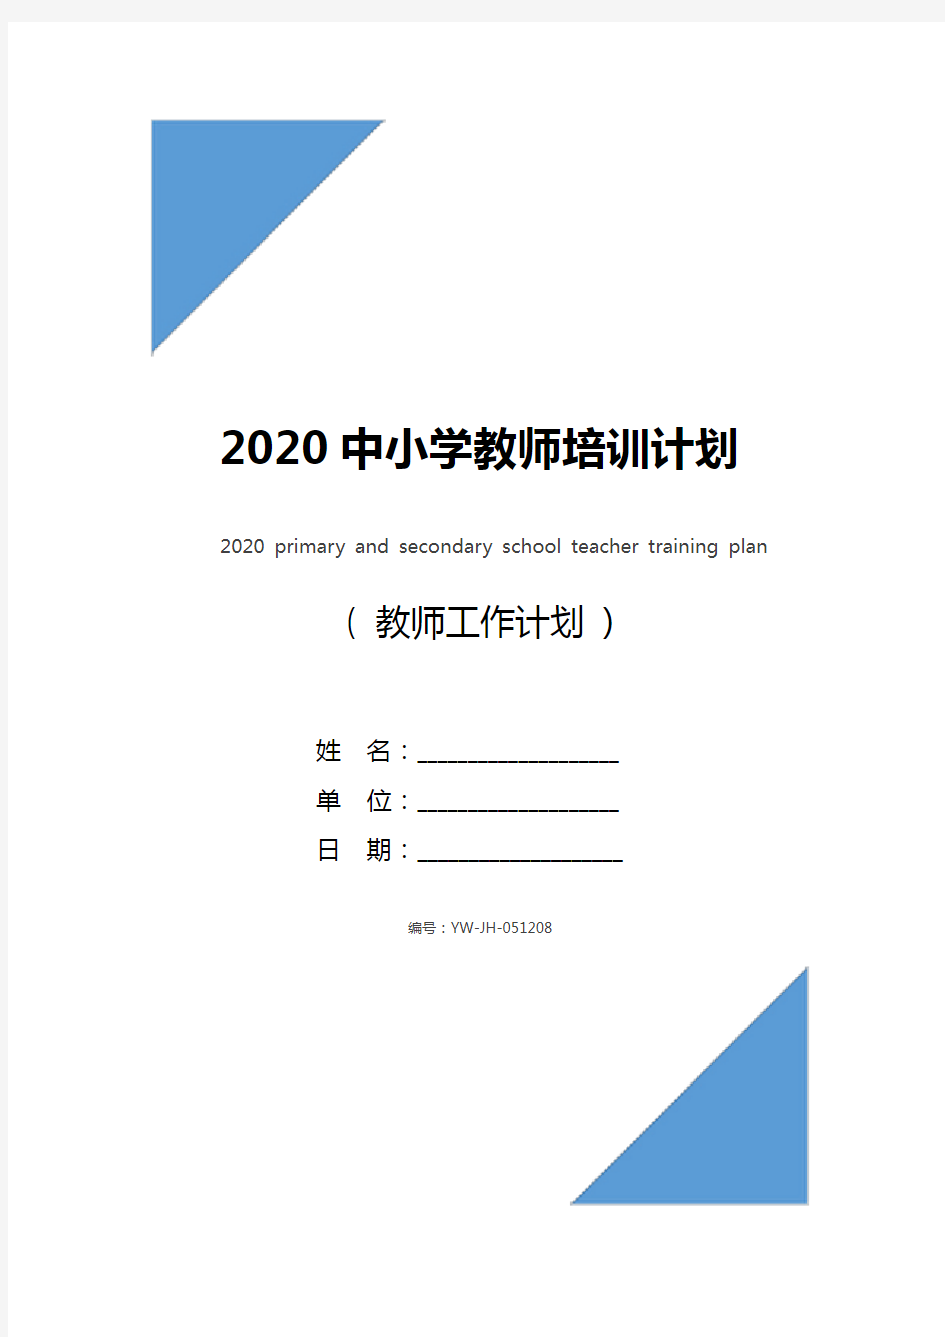 2020中小学教师培训计划